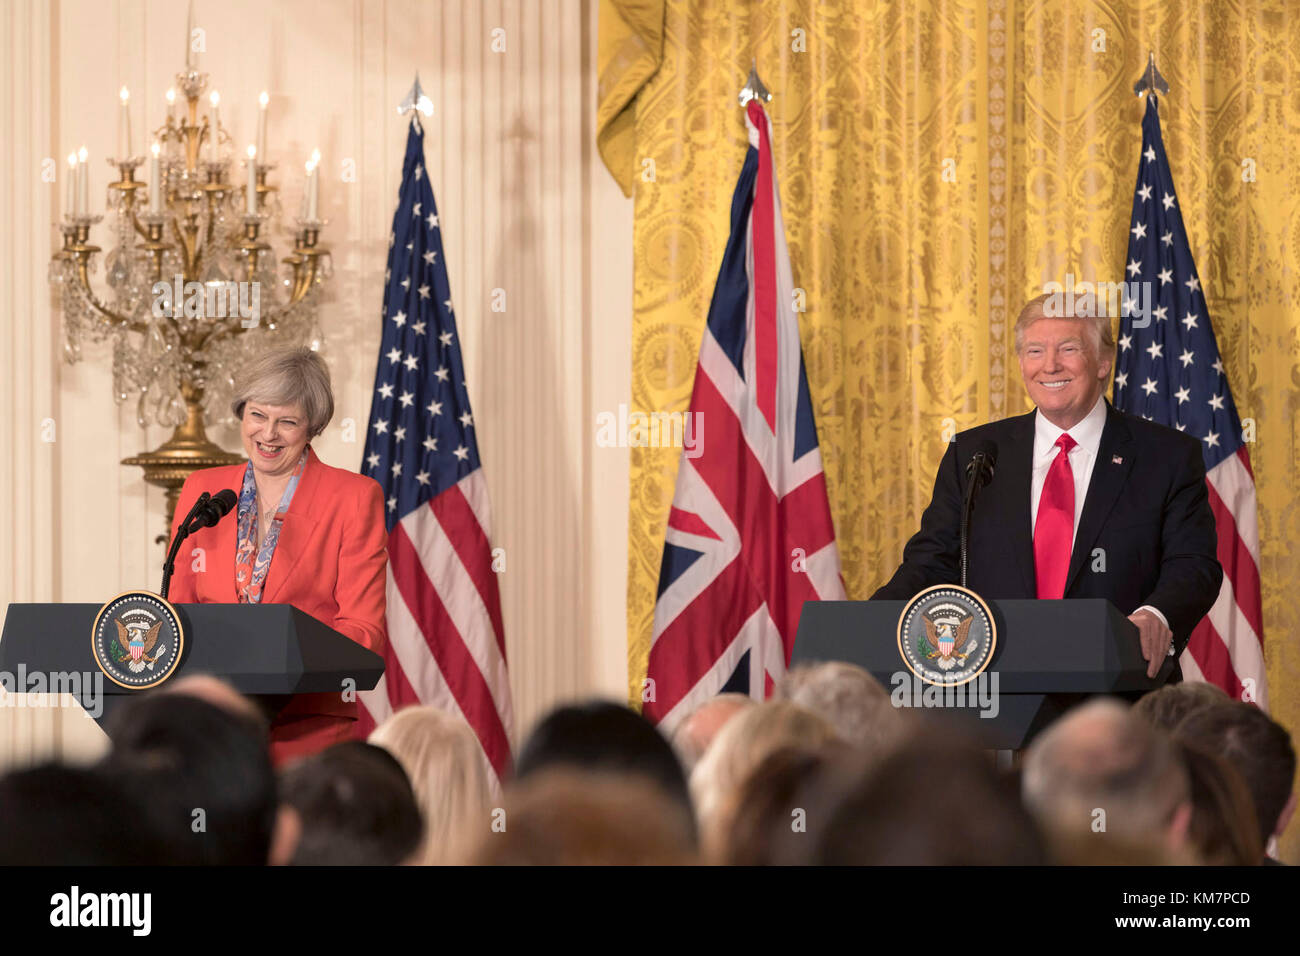 Le président Donald Trump et premier ministre britannique theresa peut apparaître lors d'une conférence de presse conjointe, vendredi, jan. 27, 2017, dans l'east room de la Maison Blanche à Washington, D.C. Banque D'Images